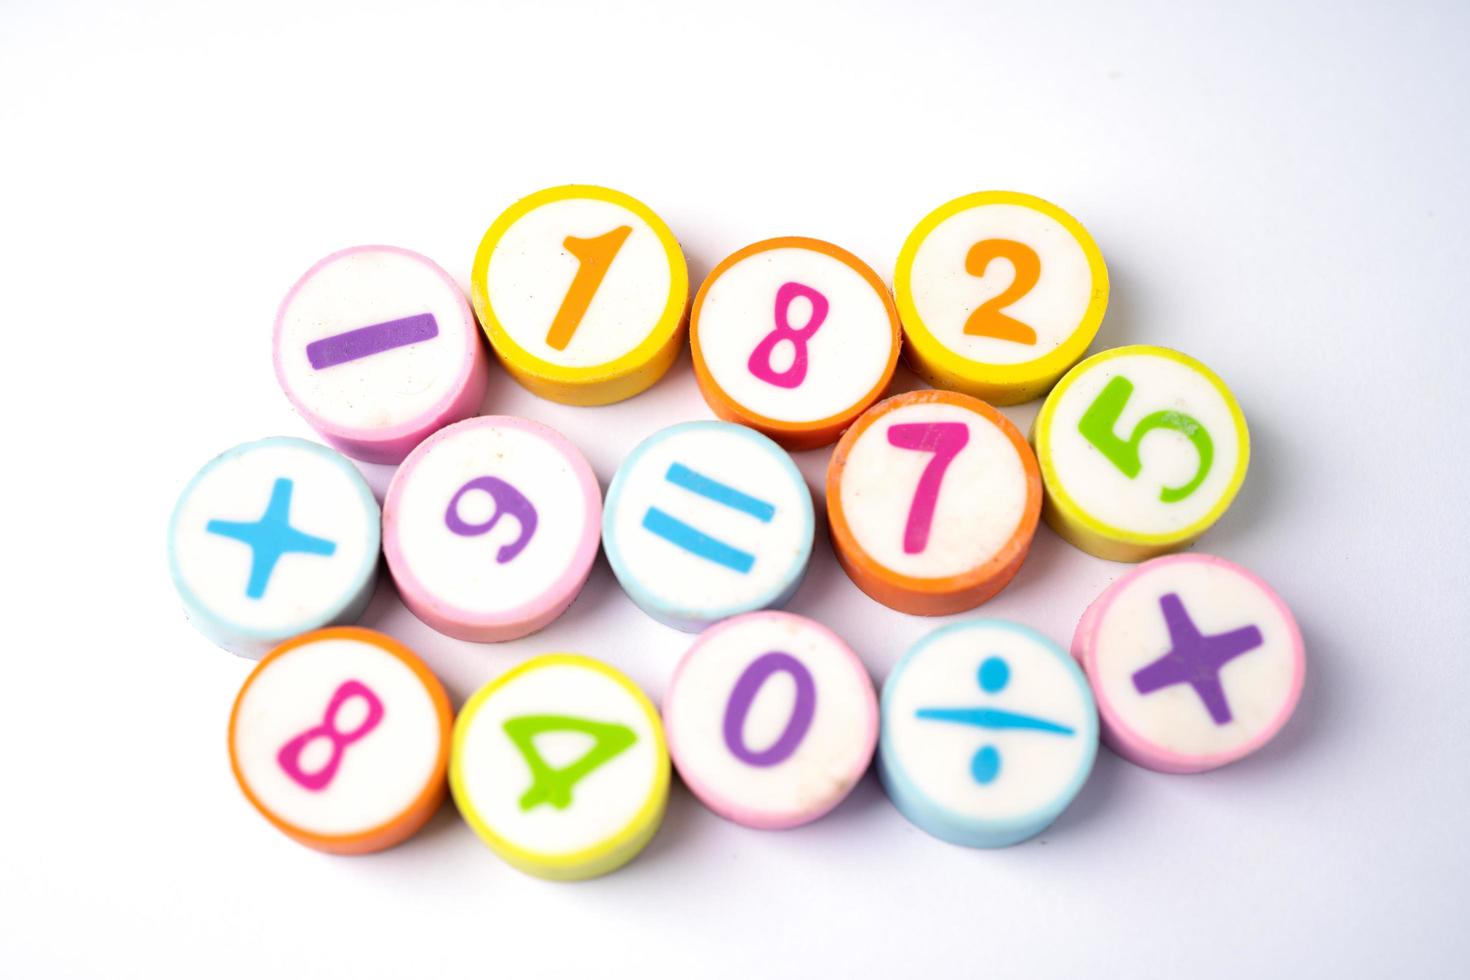 wiskunde nummer kleurrijke achtergrond, onderwijs studie wiskunde leren leren concept. foto